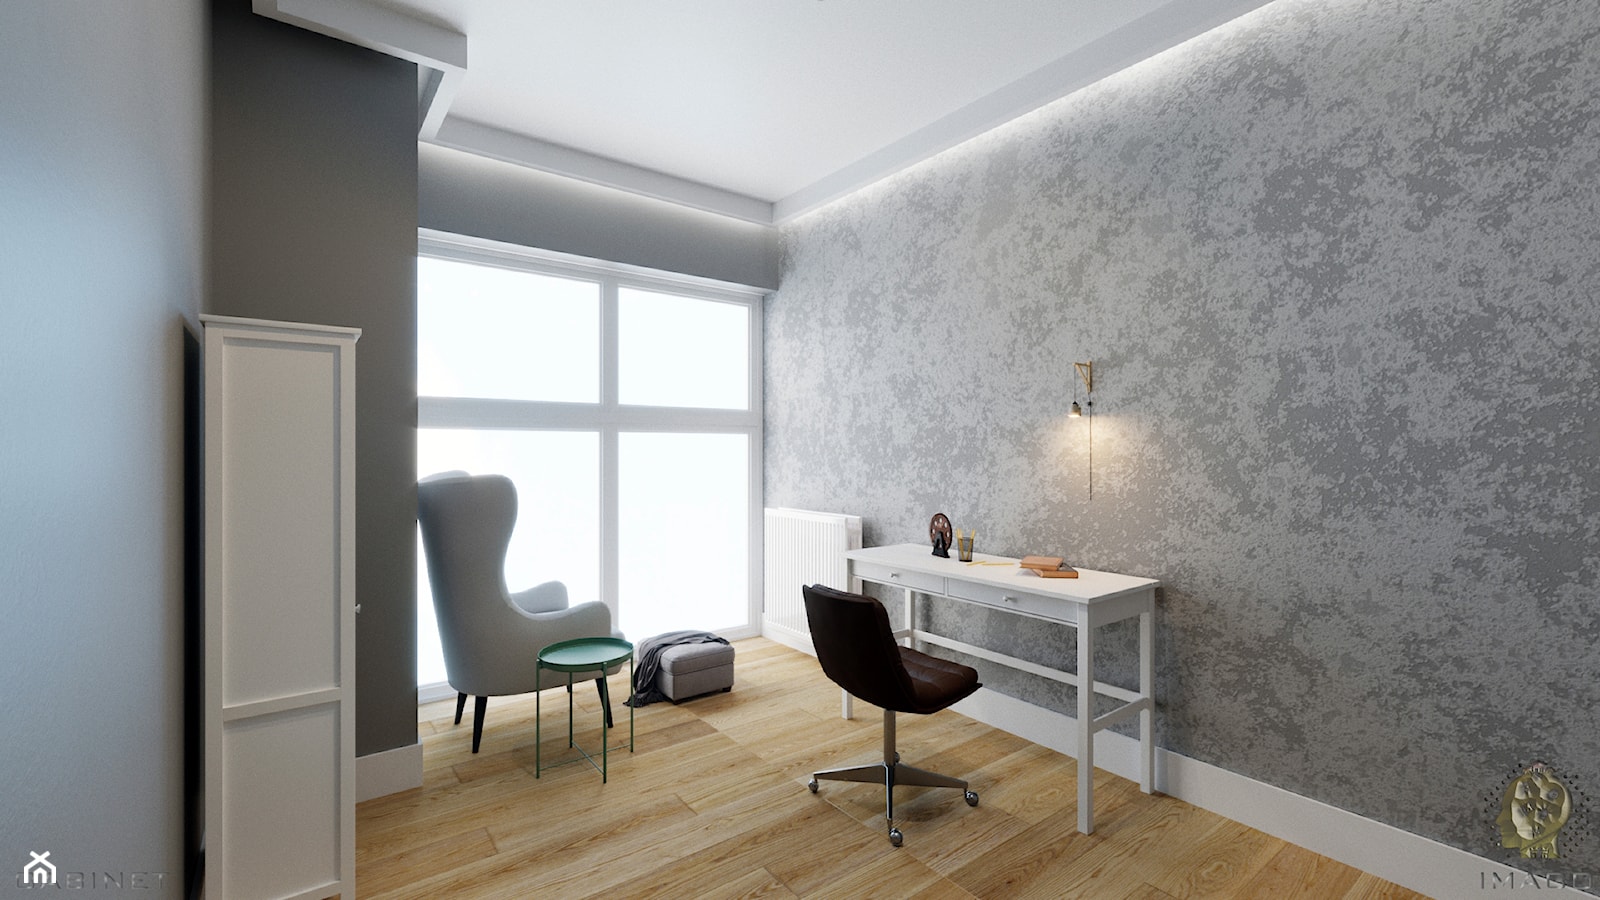 Mieszkanie w stylu industrialnym/nowoczesnym - Średnie w osobnym pomieszczeniu szare biuro, styl in ... - zdjęcie od Karolina Żaczek - Homebook